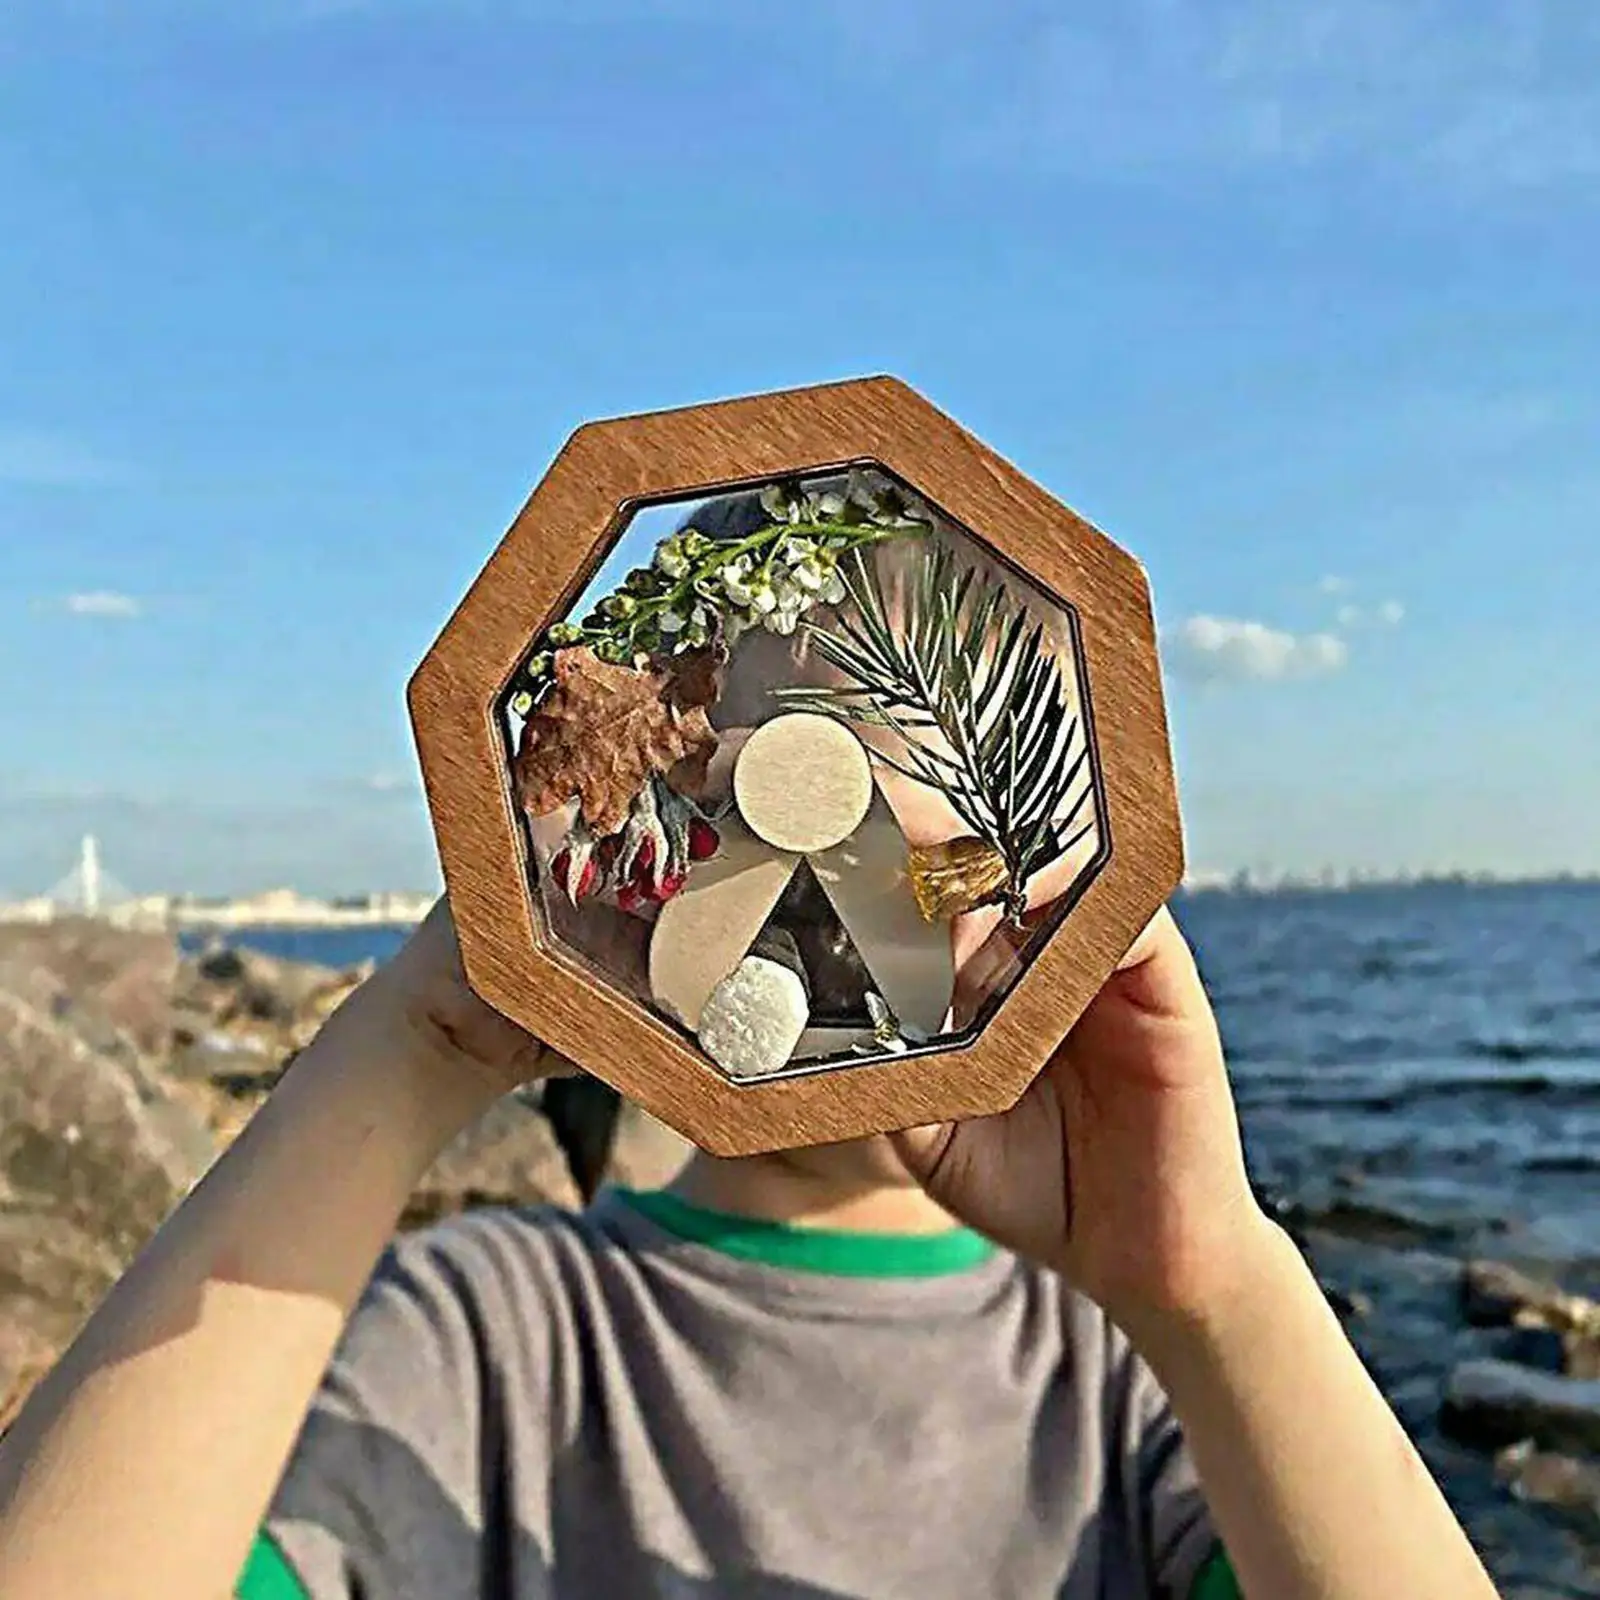 

Деревянный калейдоскоп F9R8 для детей, персонализированные подарки для малышей, уличная игрушка для родителей и детей, интерактивная игра